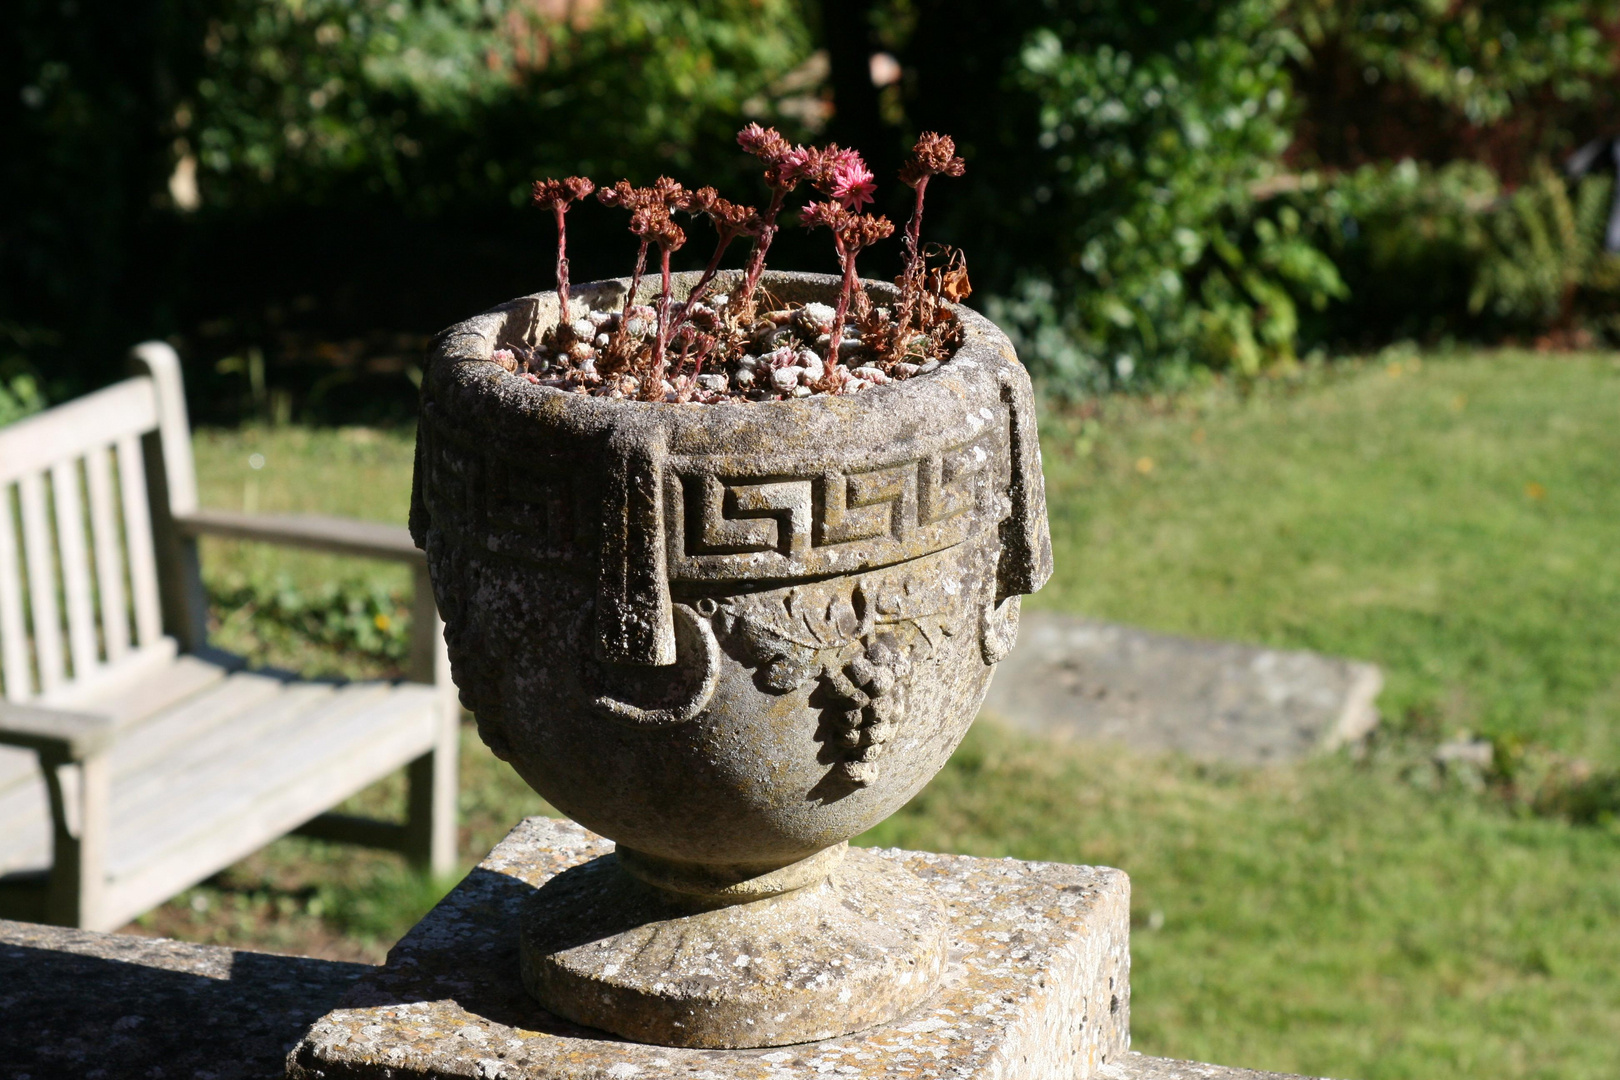 Alter Blumentopf in englischem Garten